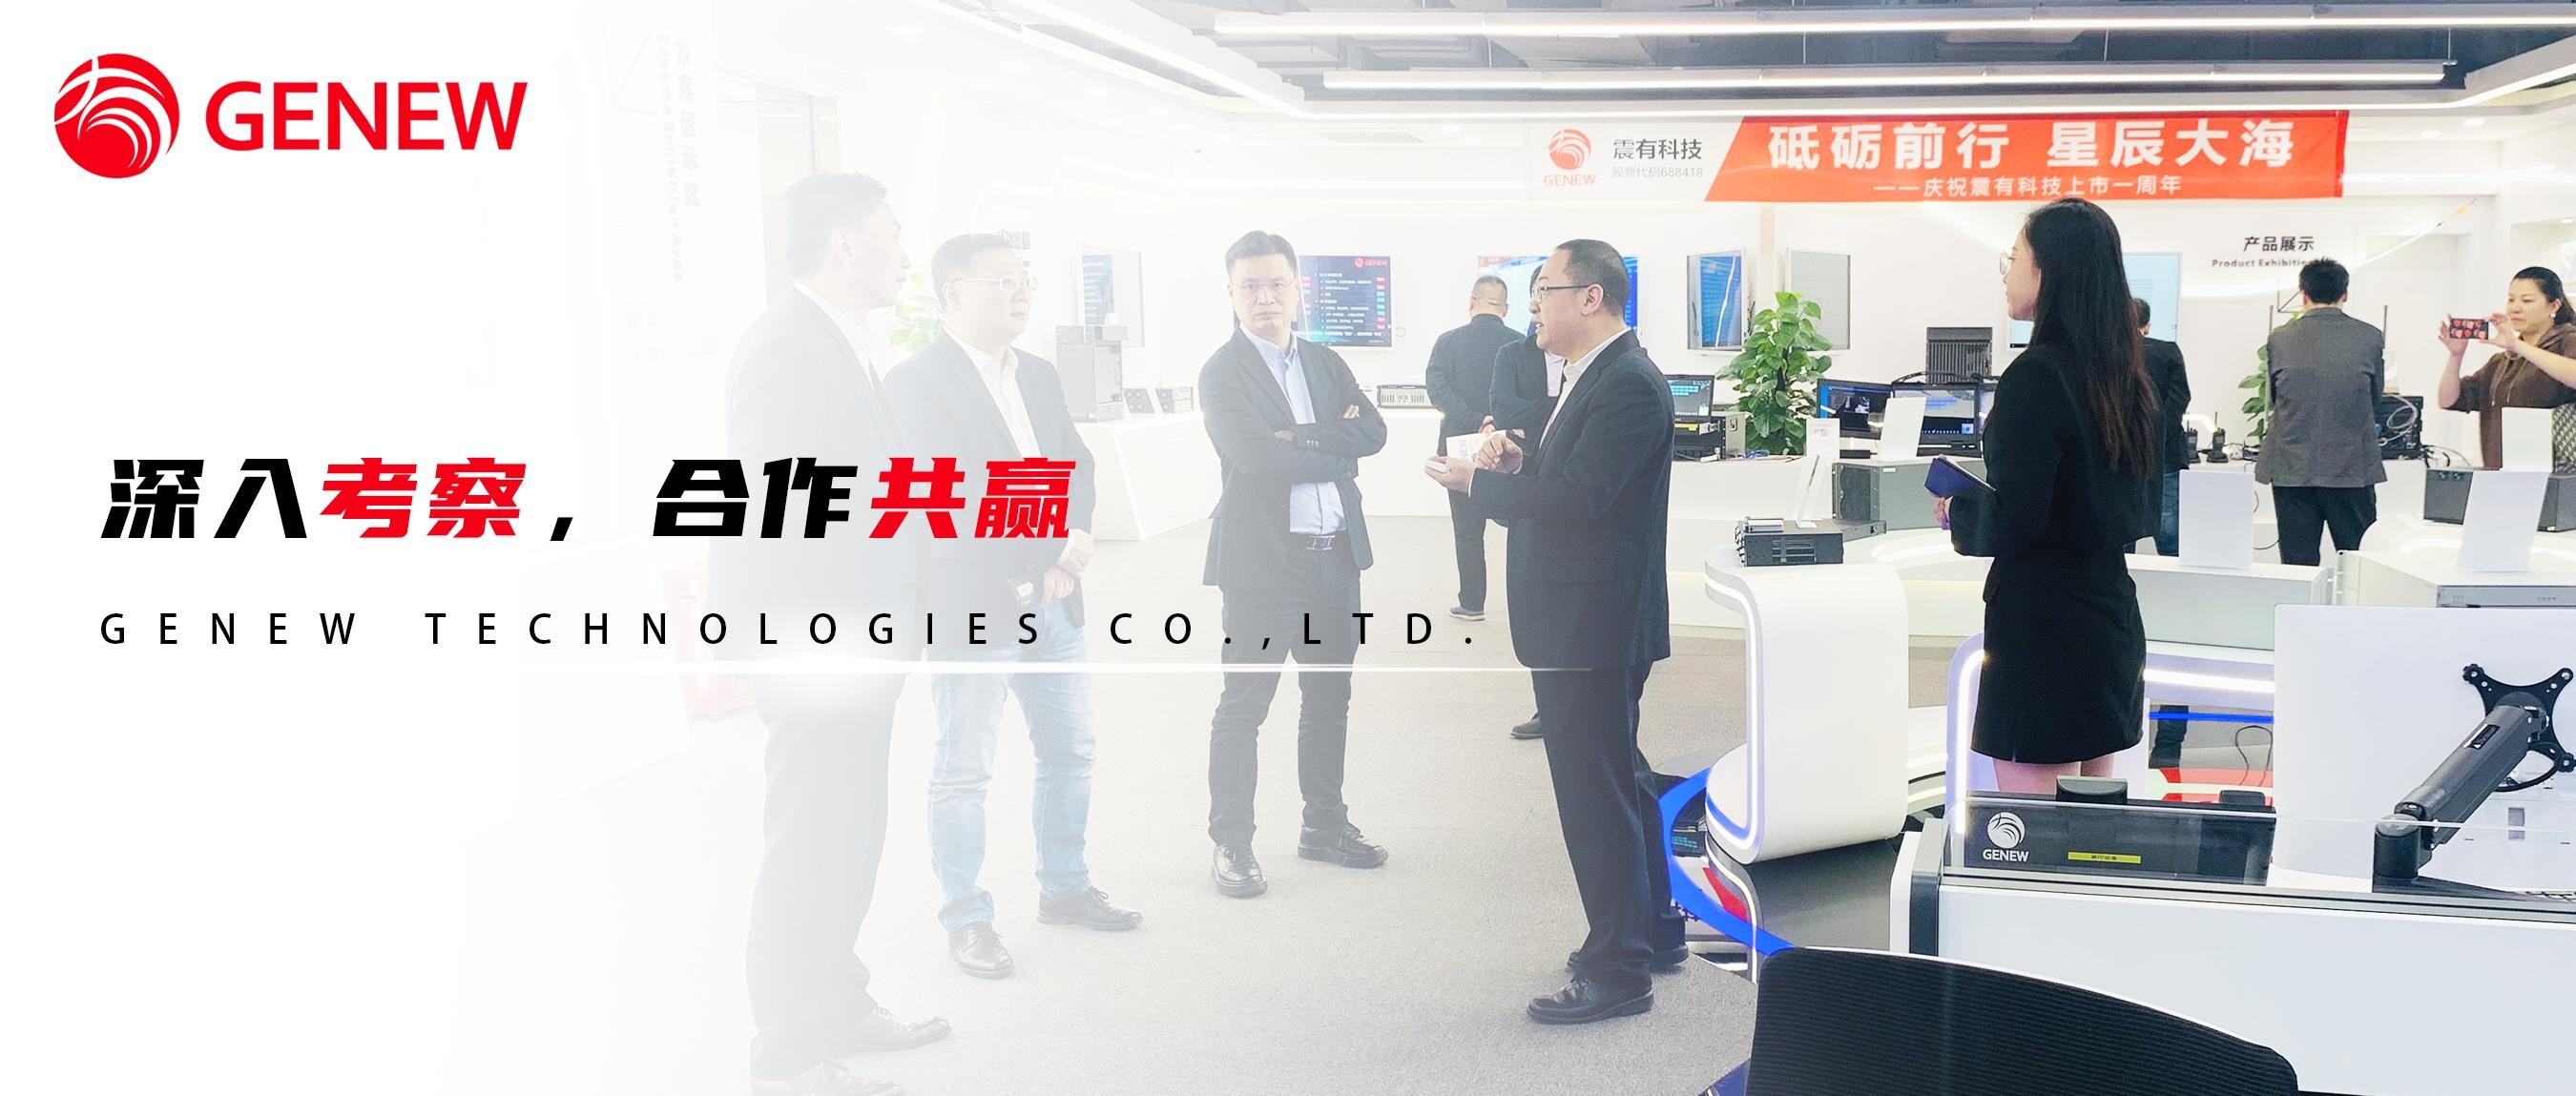 重庆市招商投资局、广电集团、高新区一行领导莅临5848vip威尼斯电子游戏考察